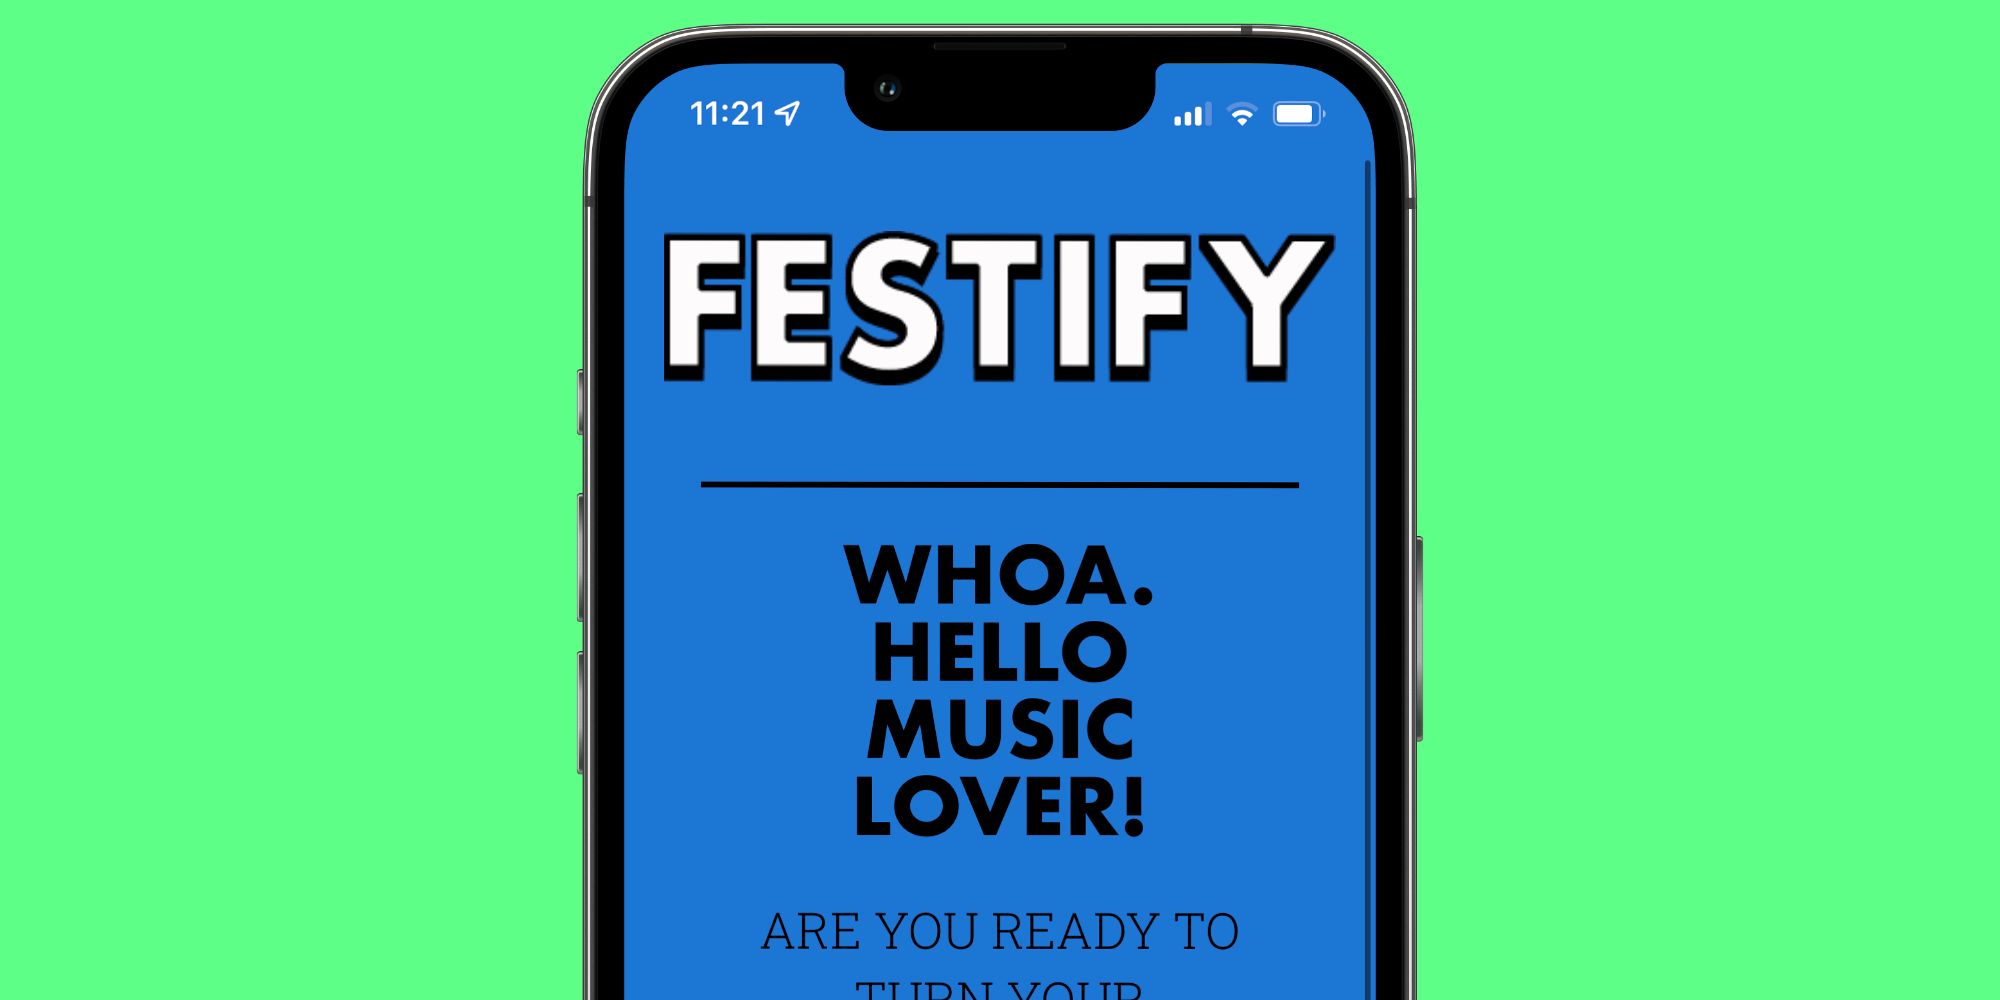 Festify para Spotify: cómo convertir tu música en una lista de festivales